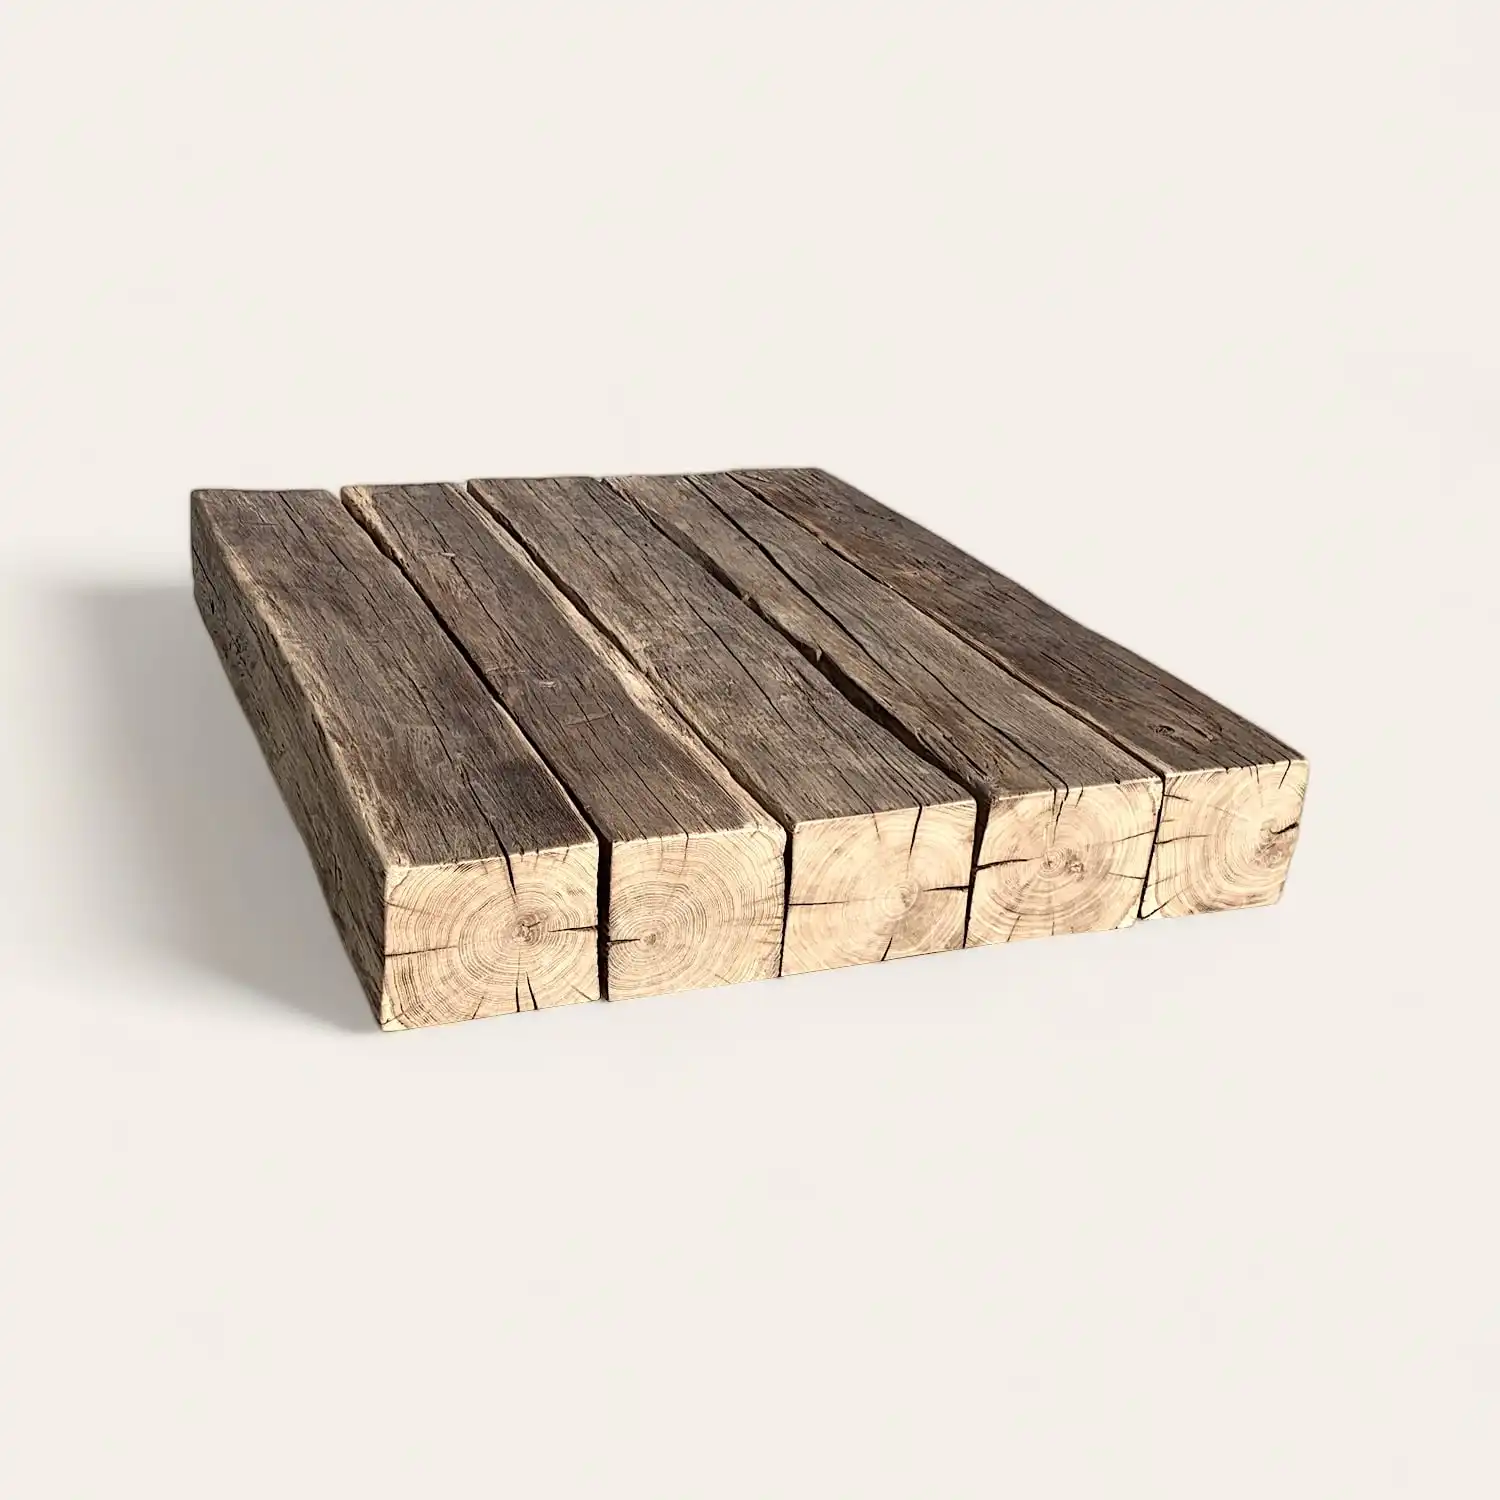  Un morceau de vieux bois sur une surface blanche. 